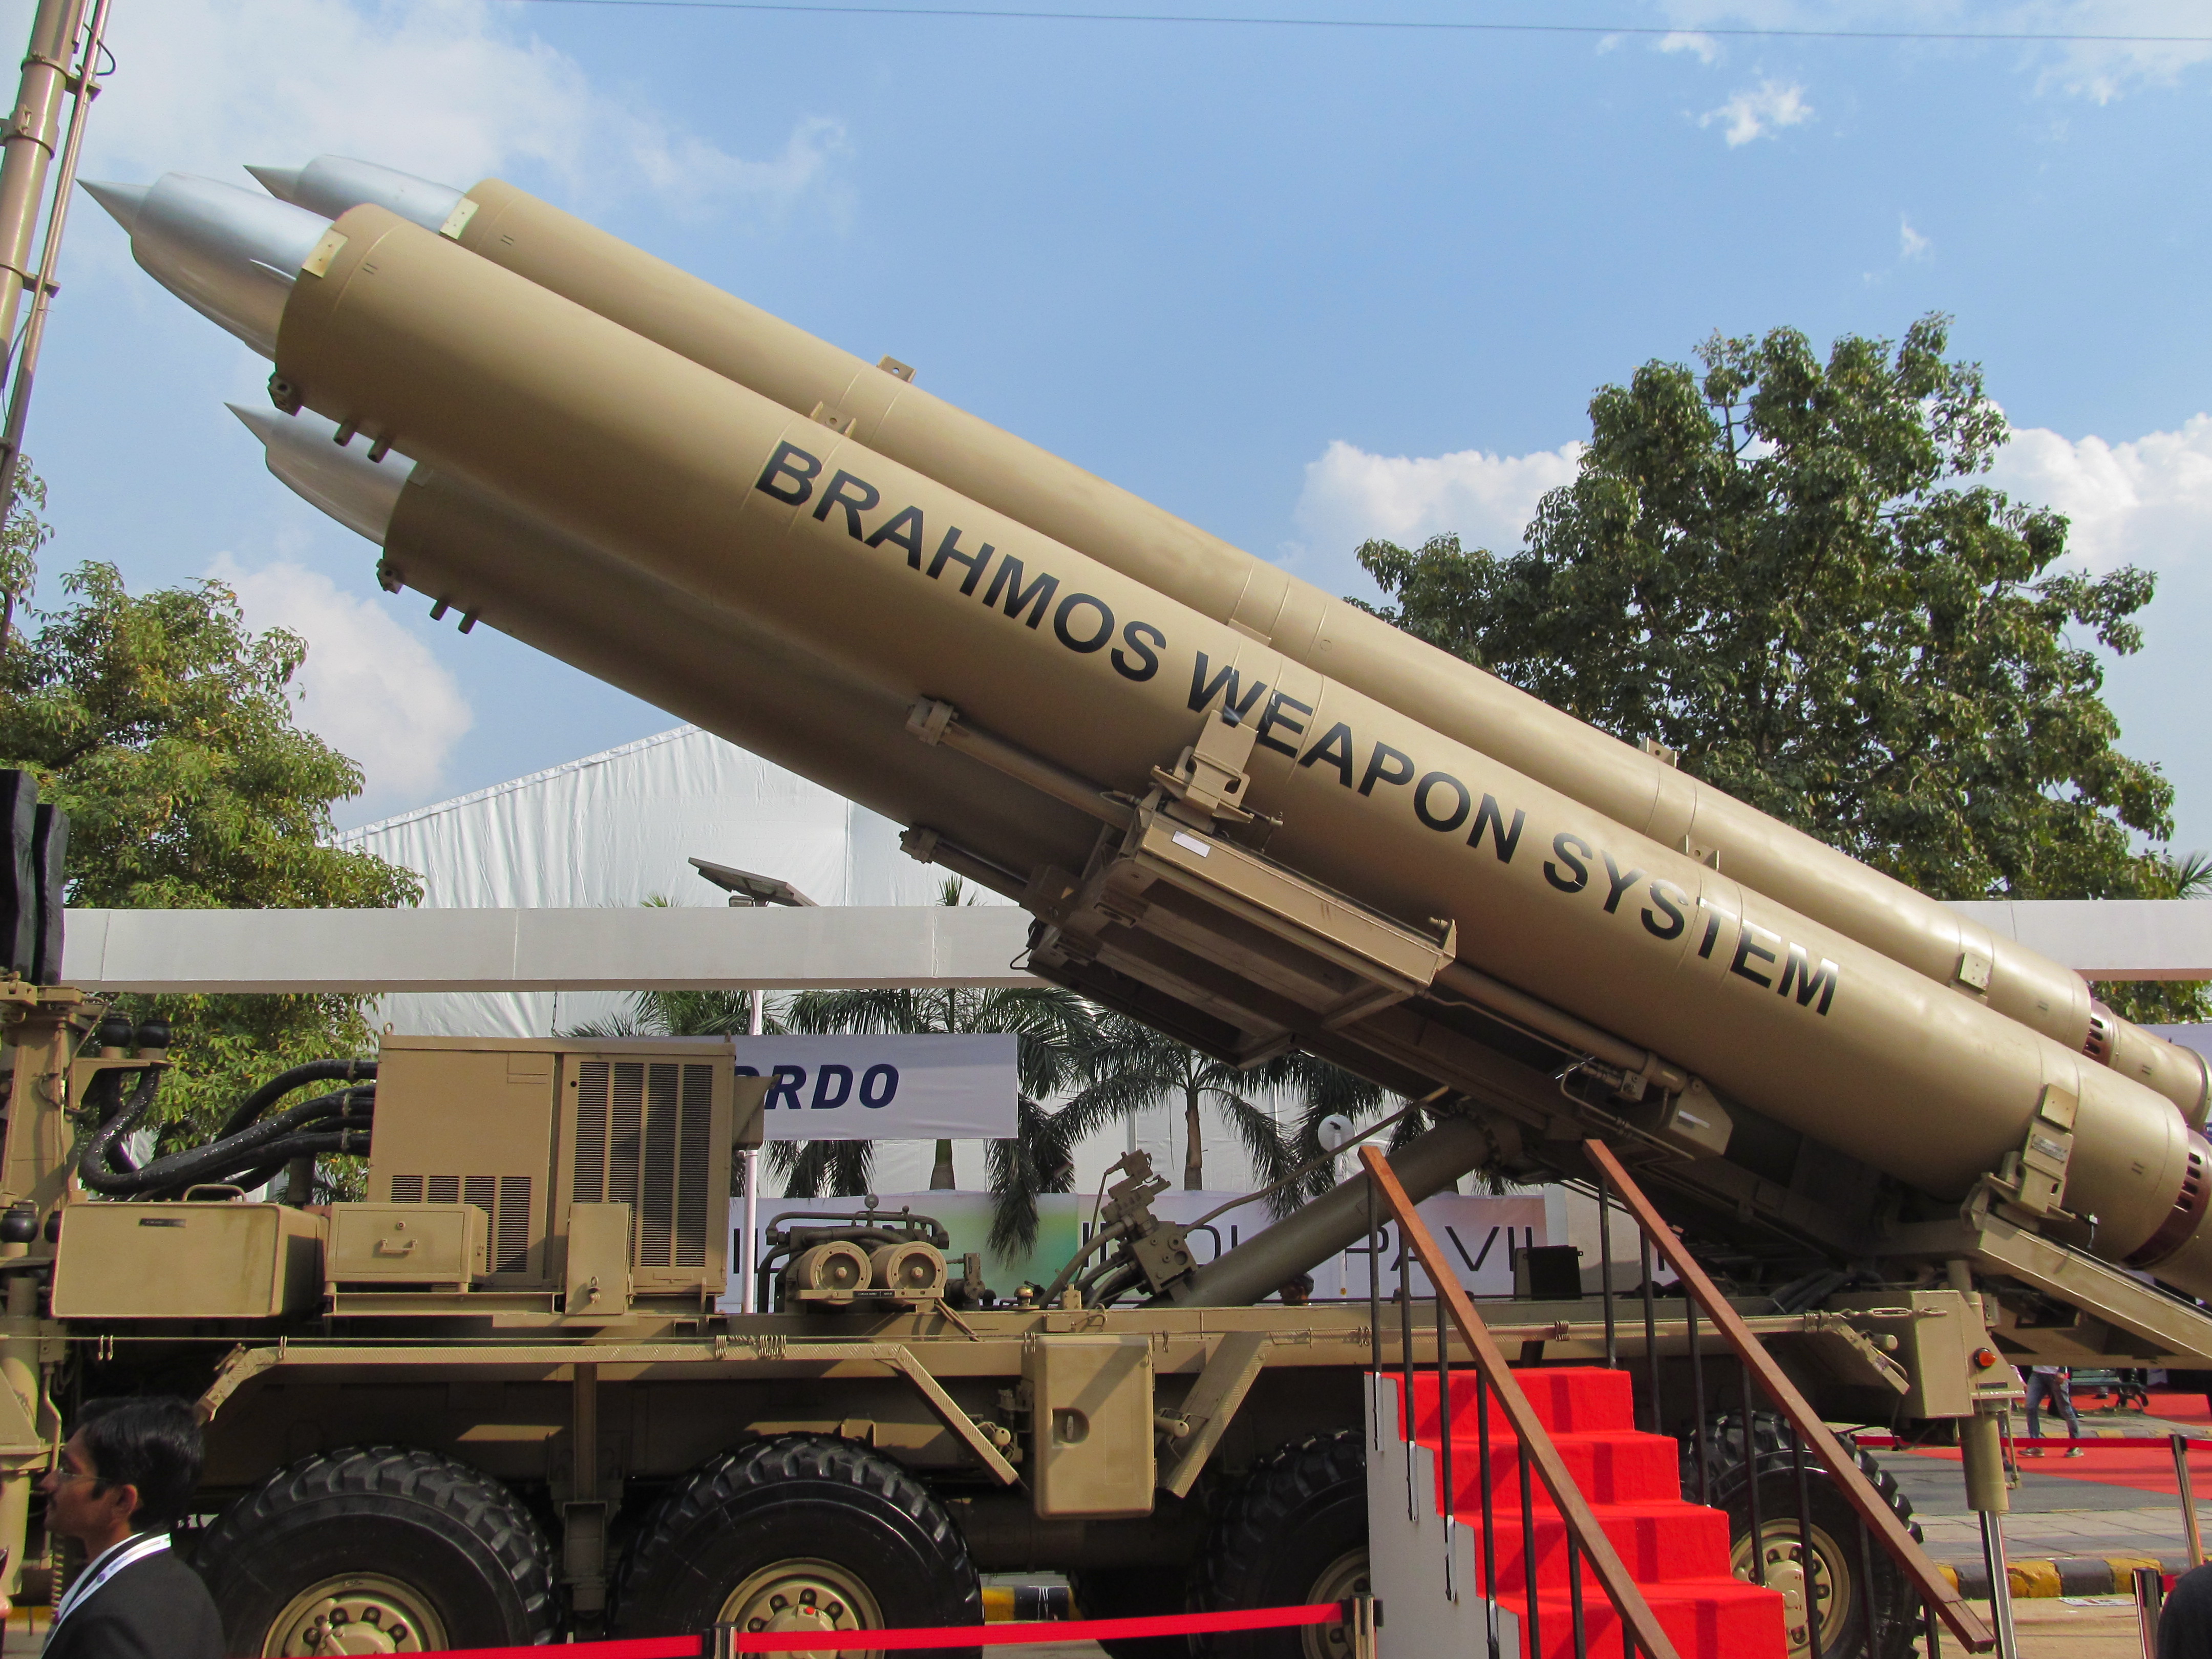 Indian_Army's_BrahMos_Mobile_Autonomous_Launchers_(MAL)_(2).JPG